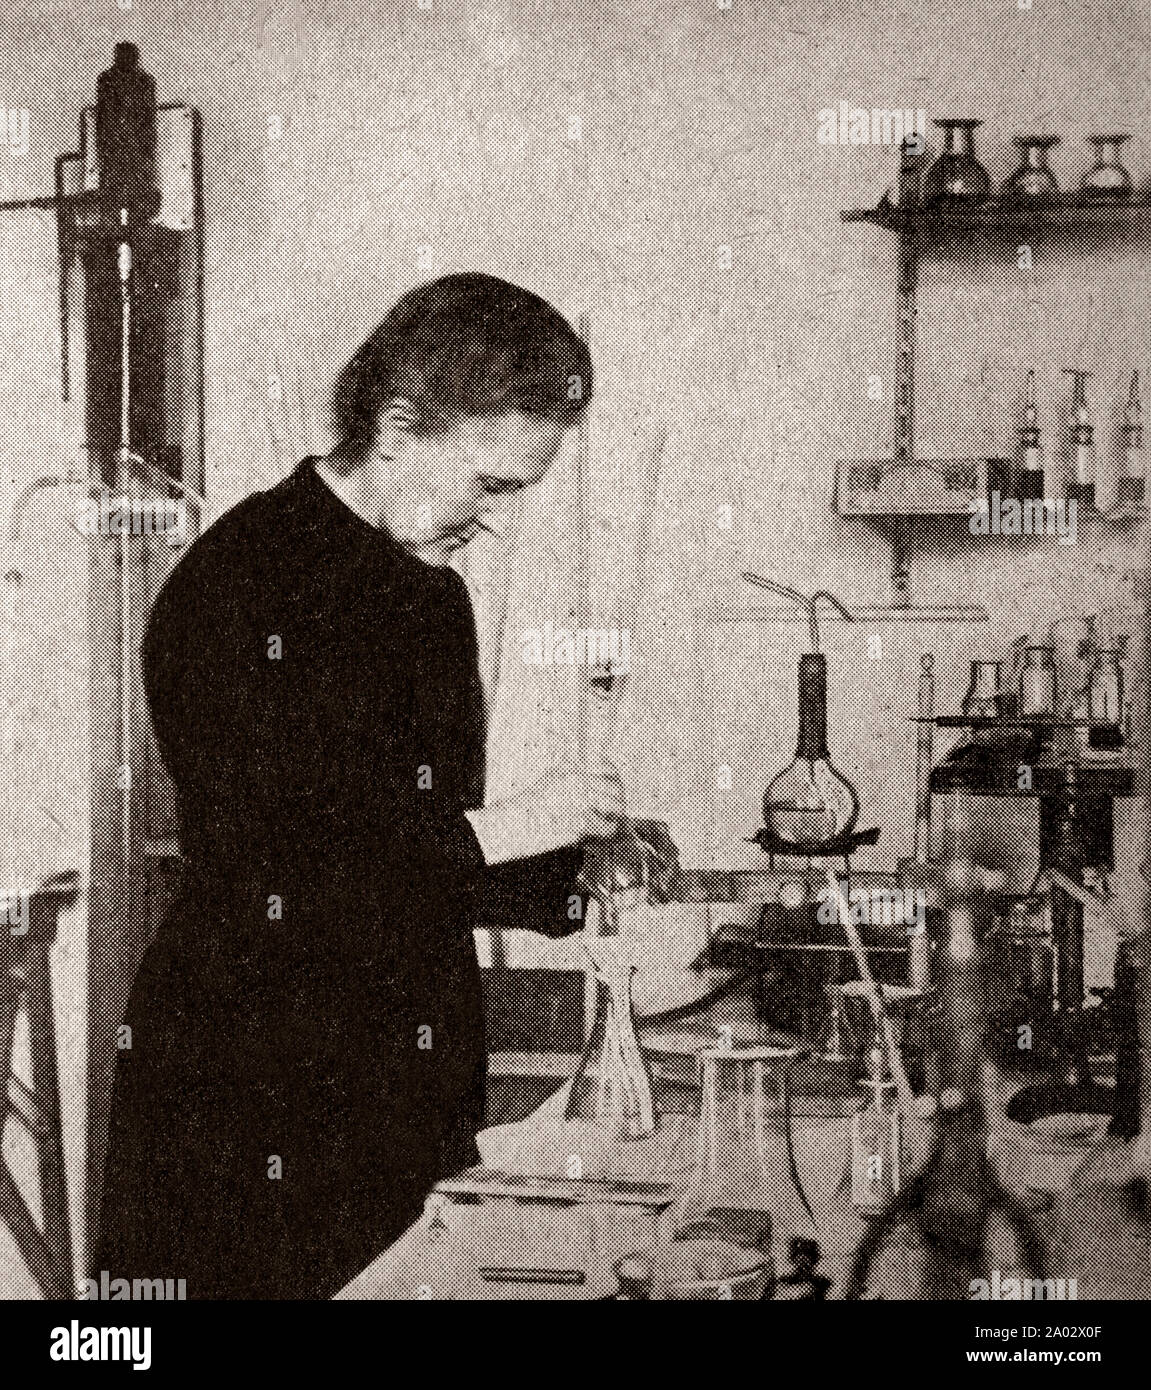 Il più recente di ingegneria e tecnologia dal 1930: Un ritratto di Marie Curie ((1867-1934), polacco e naturalizzato francese-fisico e chimico che ha condotto ricerche pionieristiche sulla radioattività. Lei è stata la prima donna a vincere un premio Nobel, è l'unica donna a vincere il premio nobel due volte, ed è la sola persona a vincere il premio Nobel in due diversi campi scientifici. Foto Stock